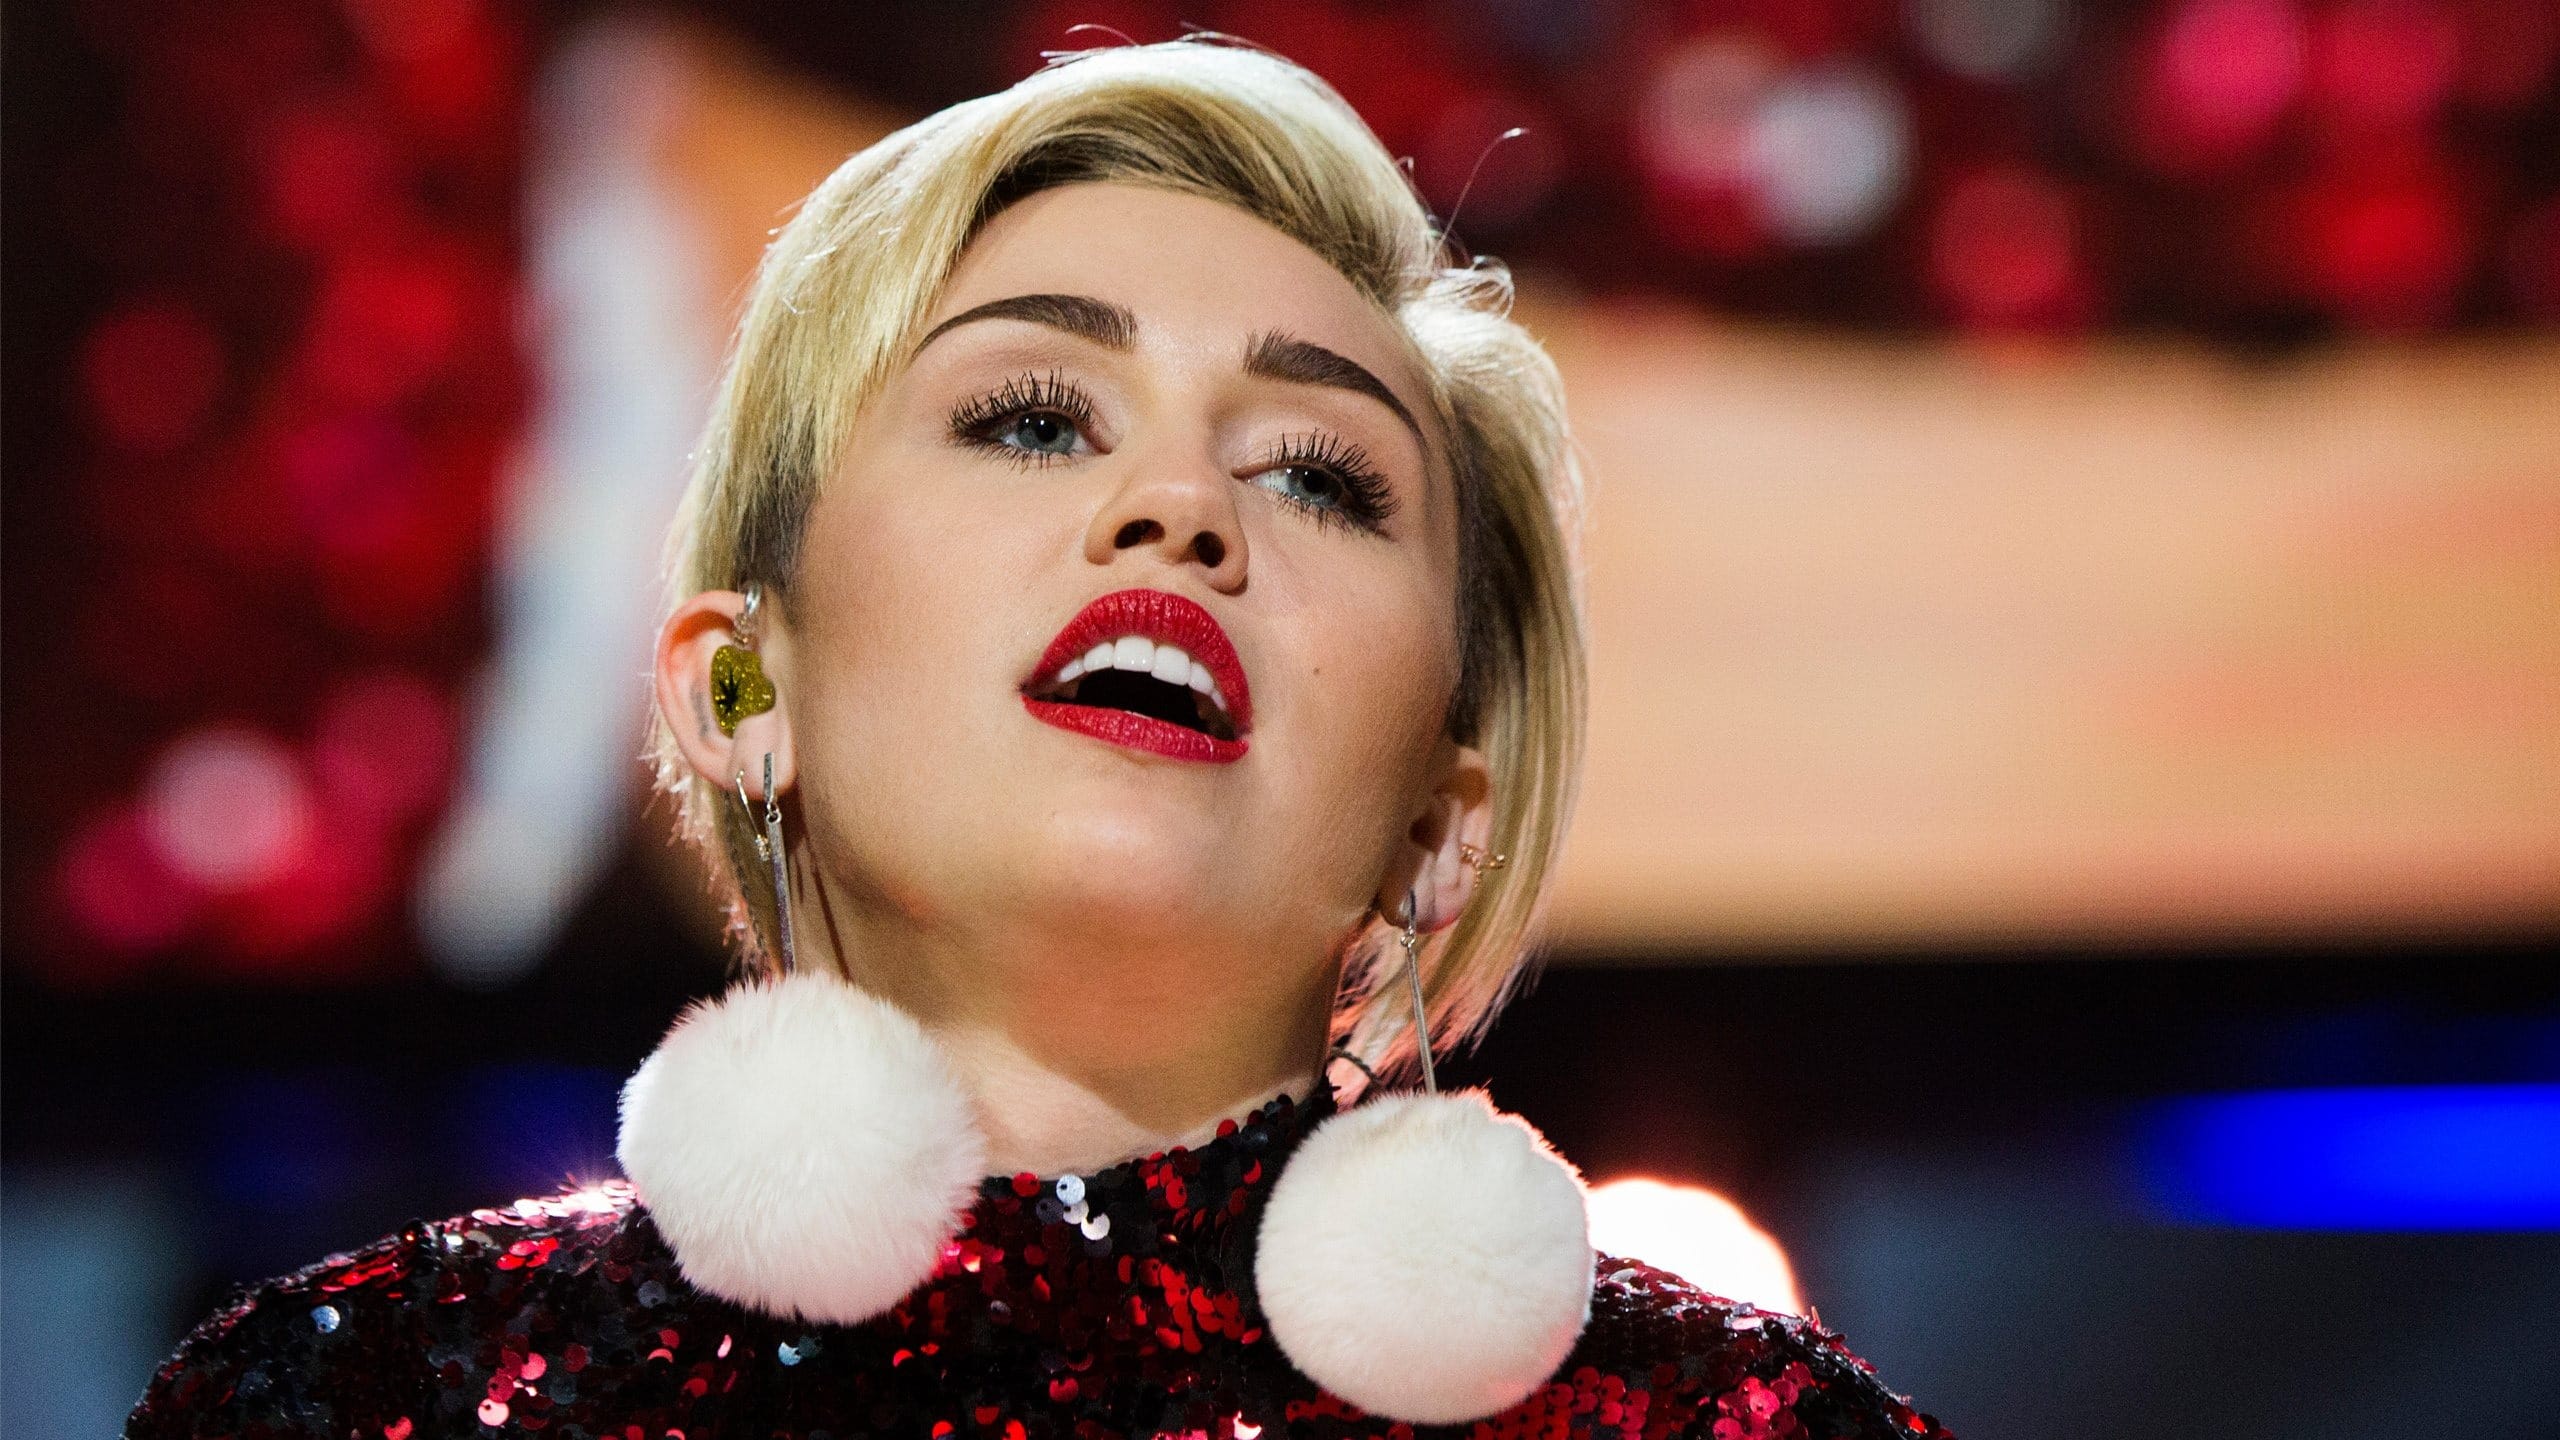 Miley Cyrus - Plastic Hearts Lyrics and Tracklist